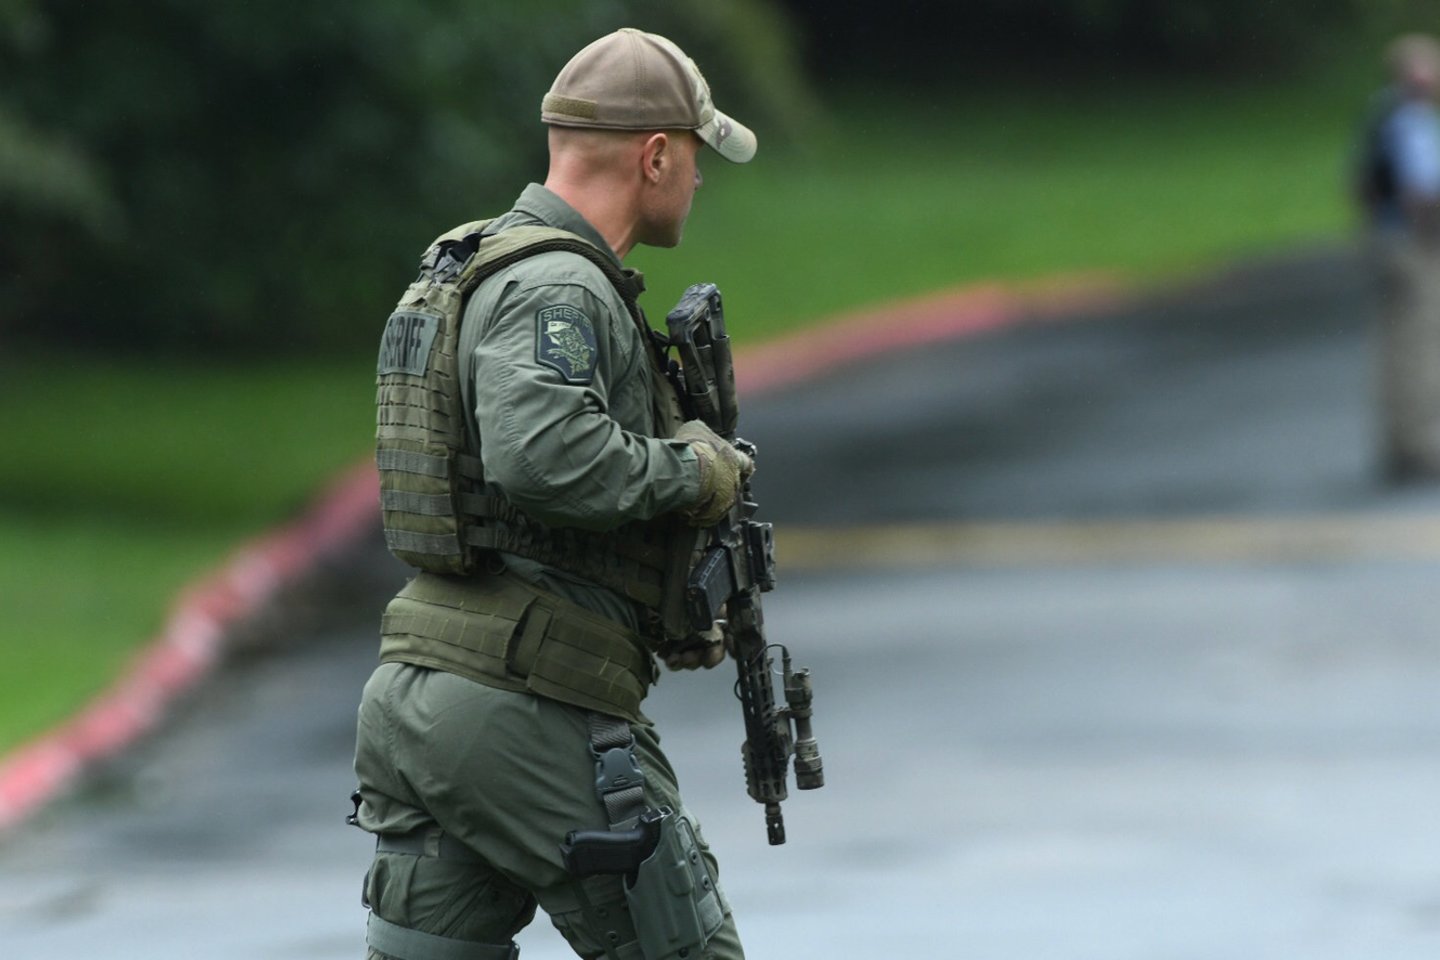  JAV Merilando valstijos šiaurės rytuose ketvirtadienį įvyko šaudynės, esama aukų, praneša pareigūnai.<br>AP nuotr.